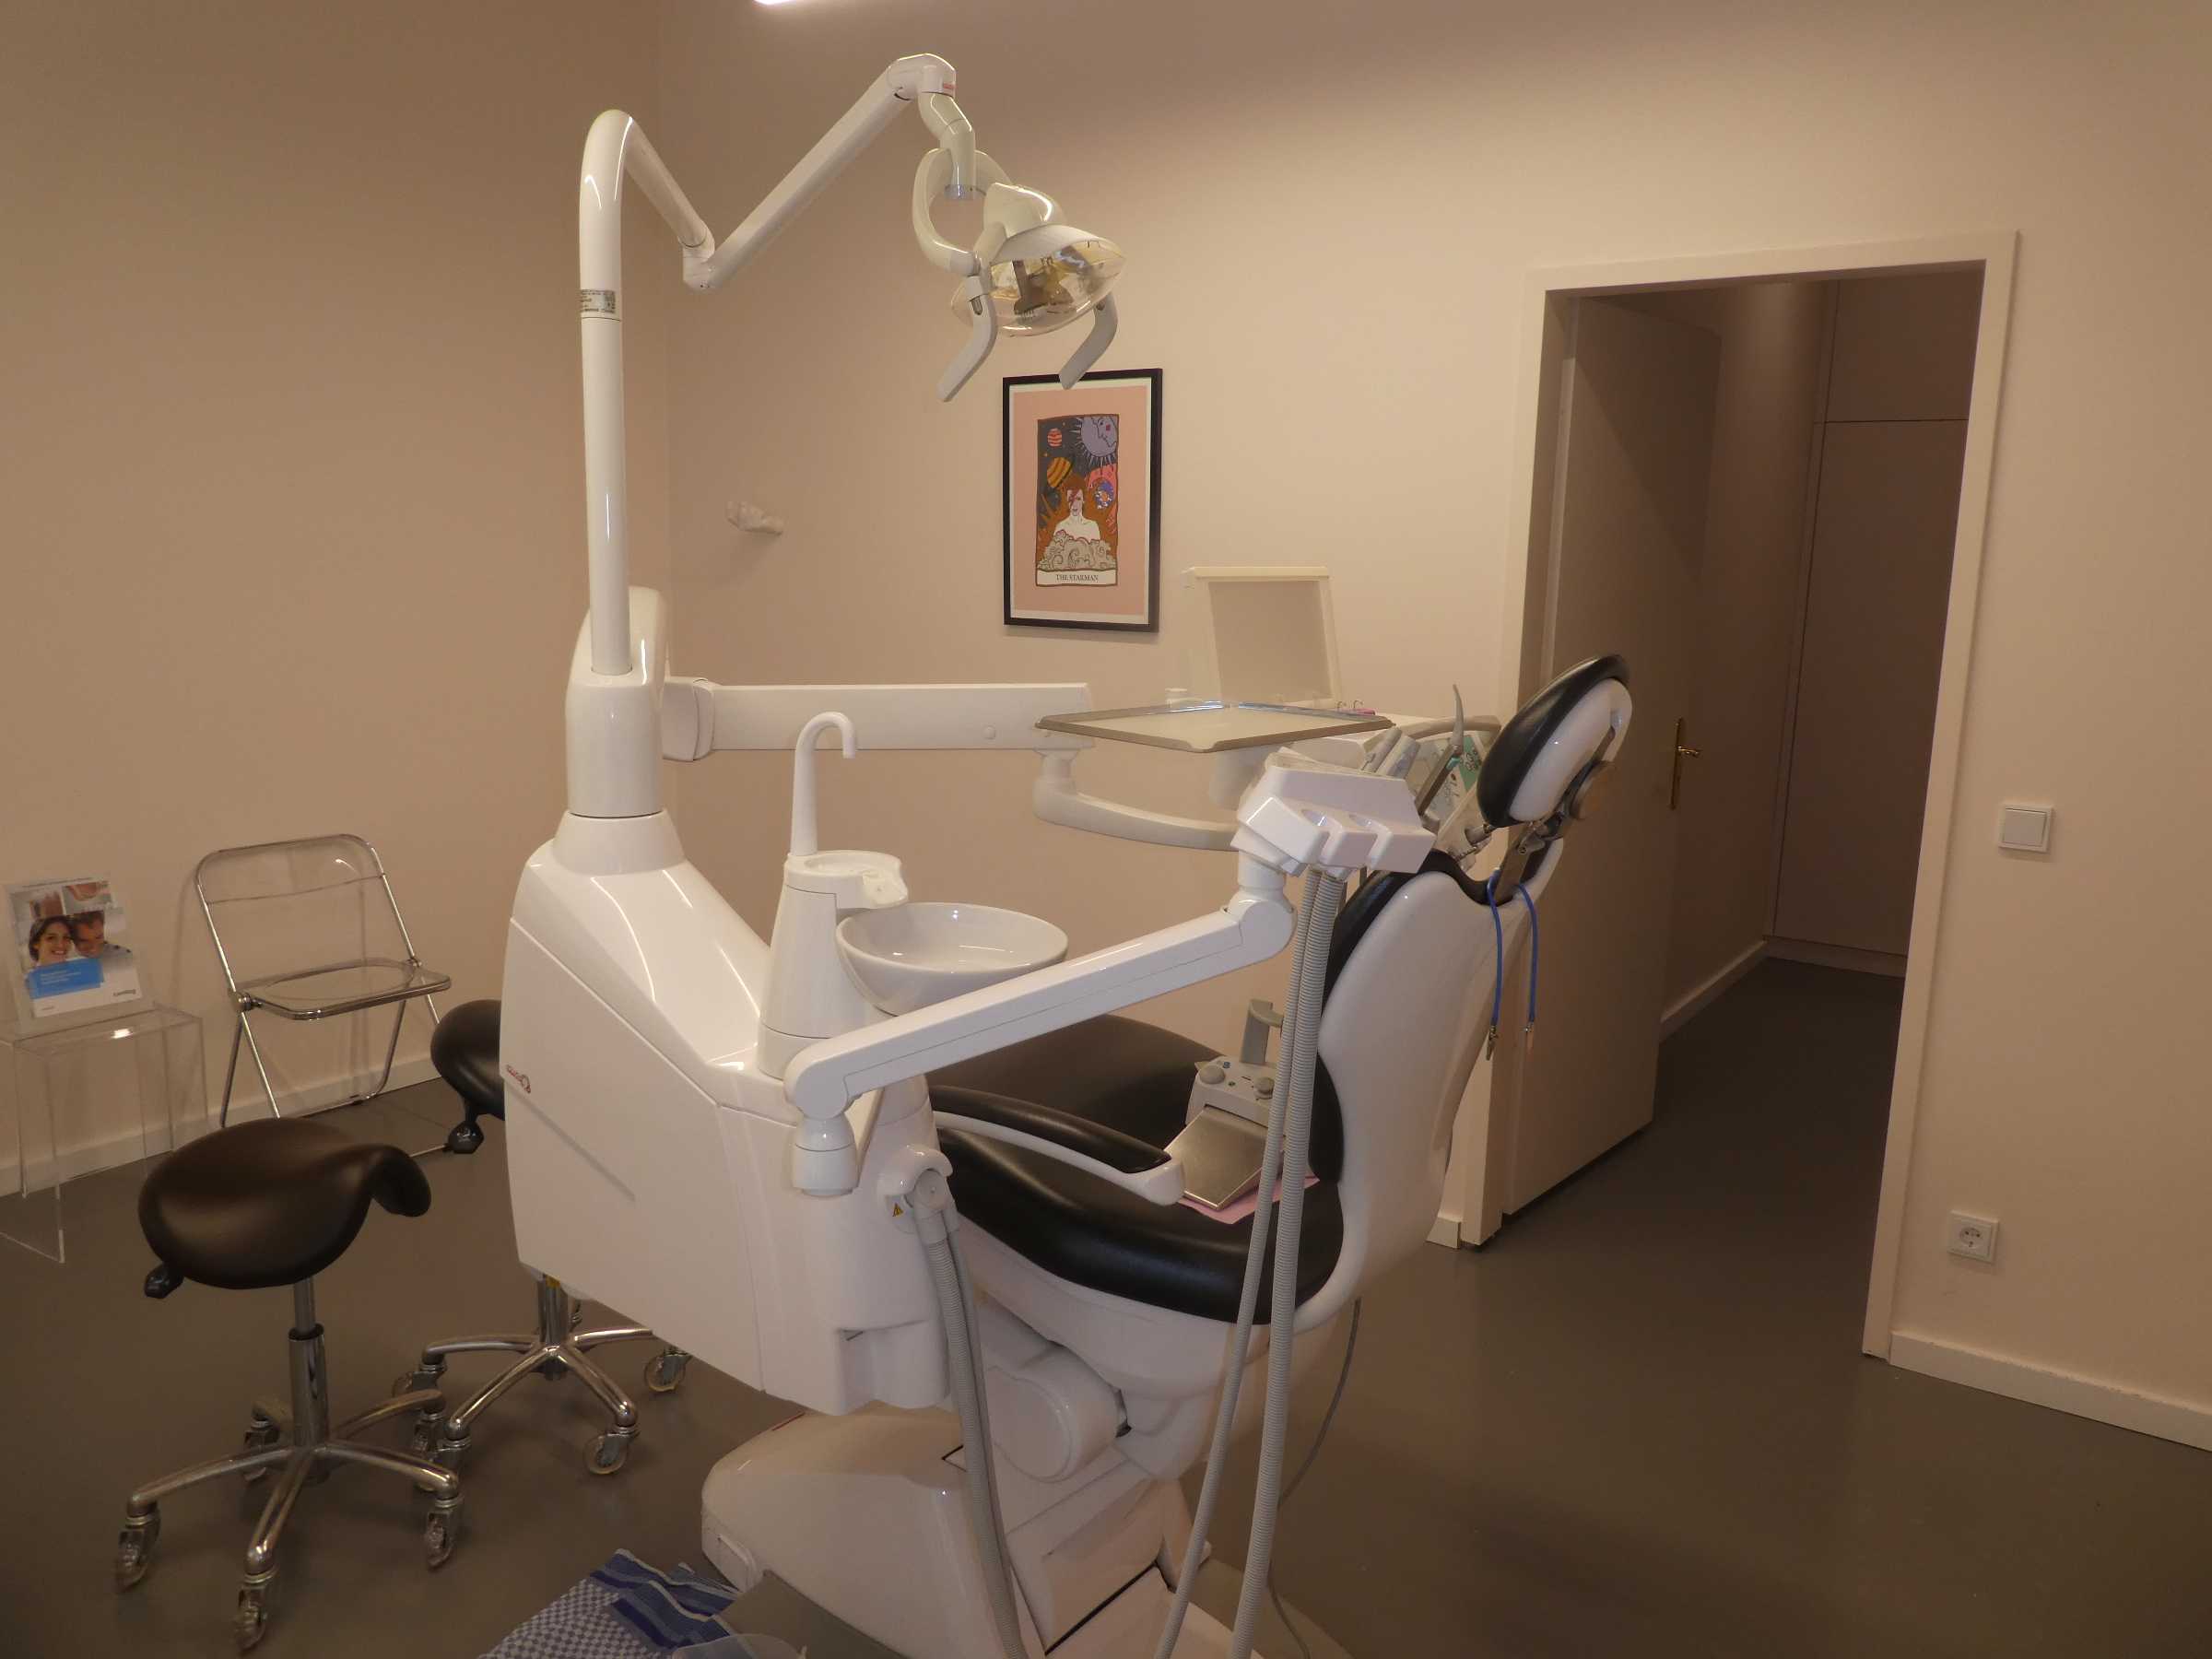 Medizintechnik und Ausstattung einer Dental-/Zahnarztpraxis